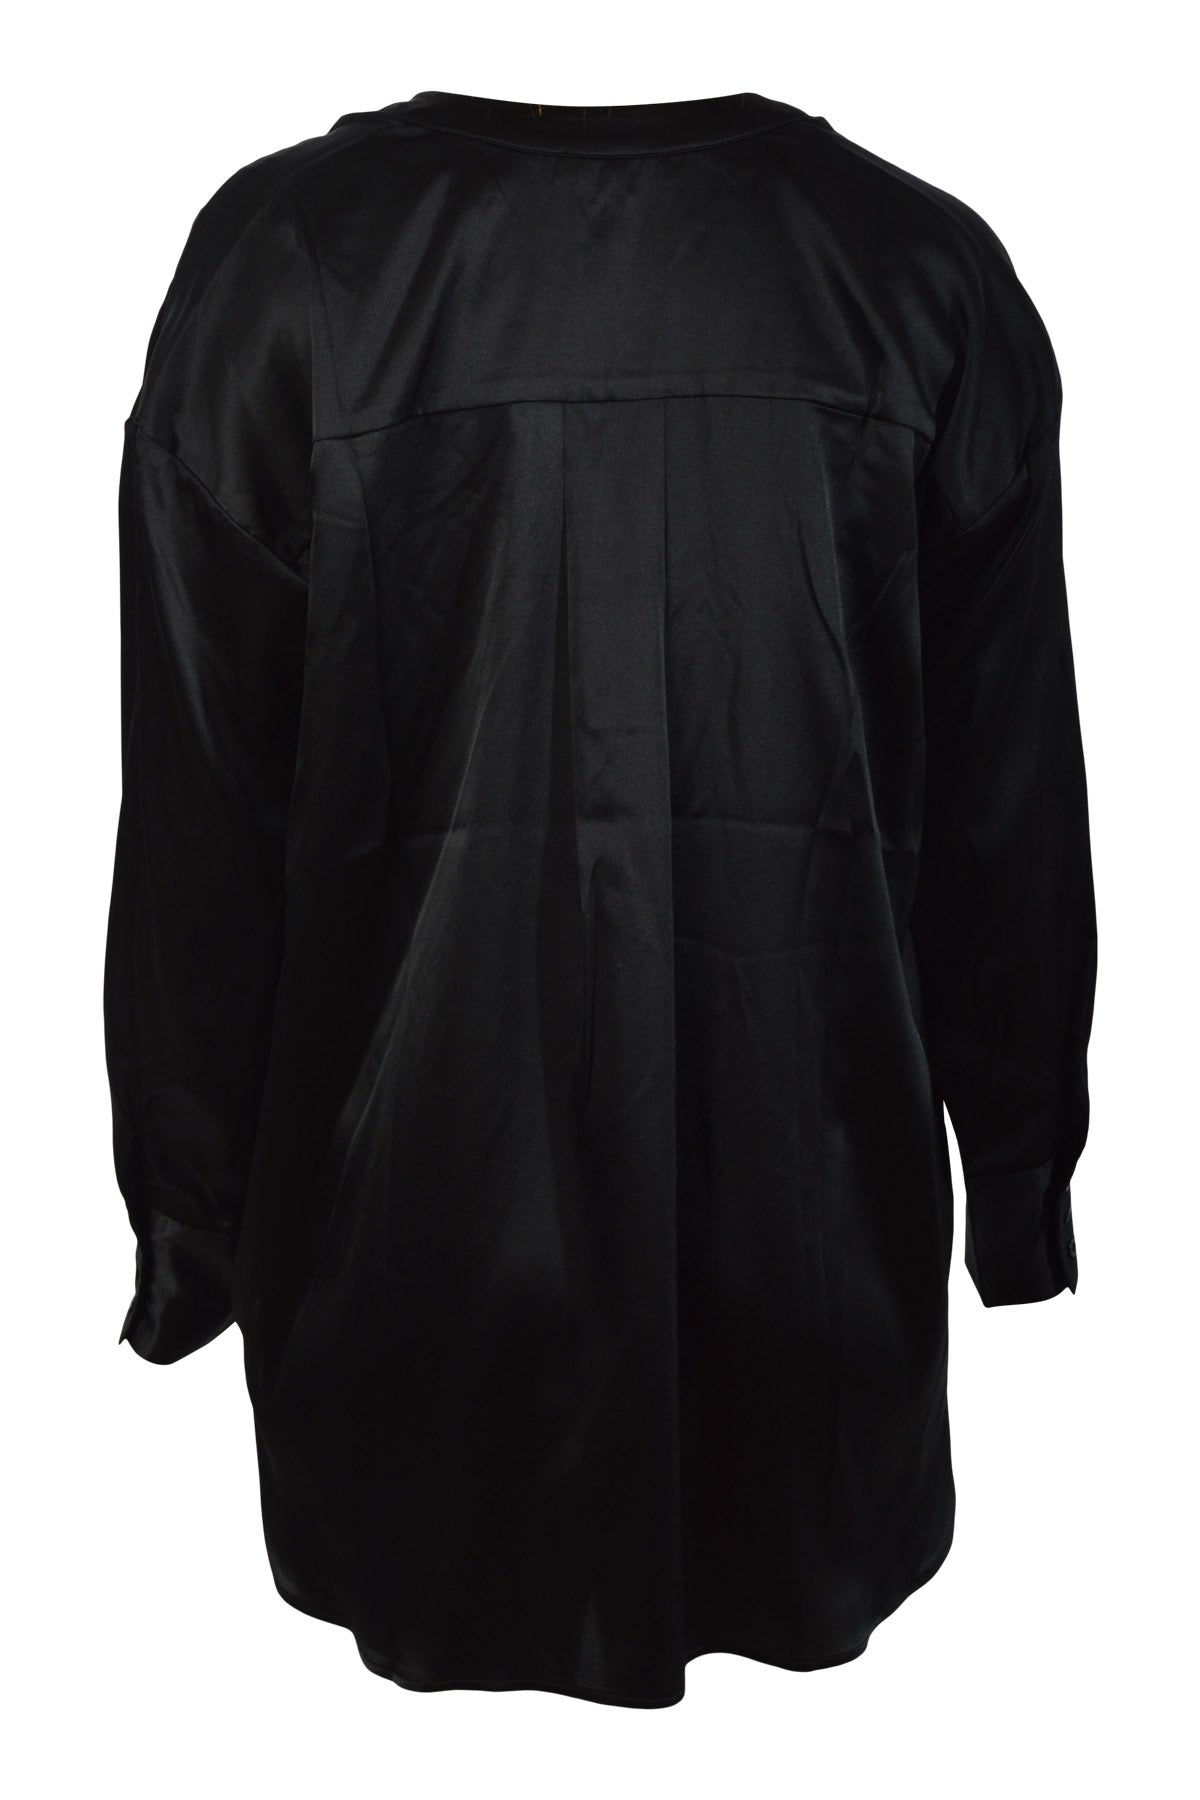 Charlotte Sparre Sparky blouse 2807, Solid black